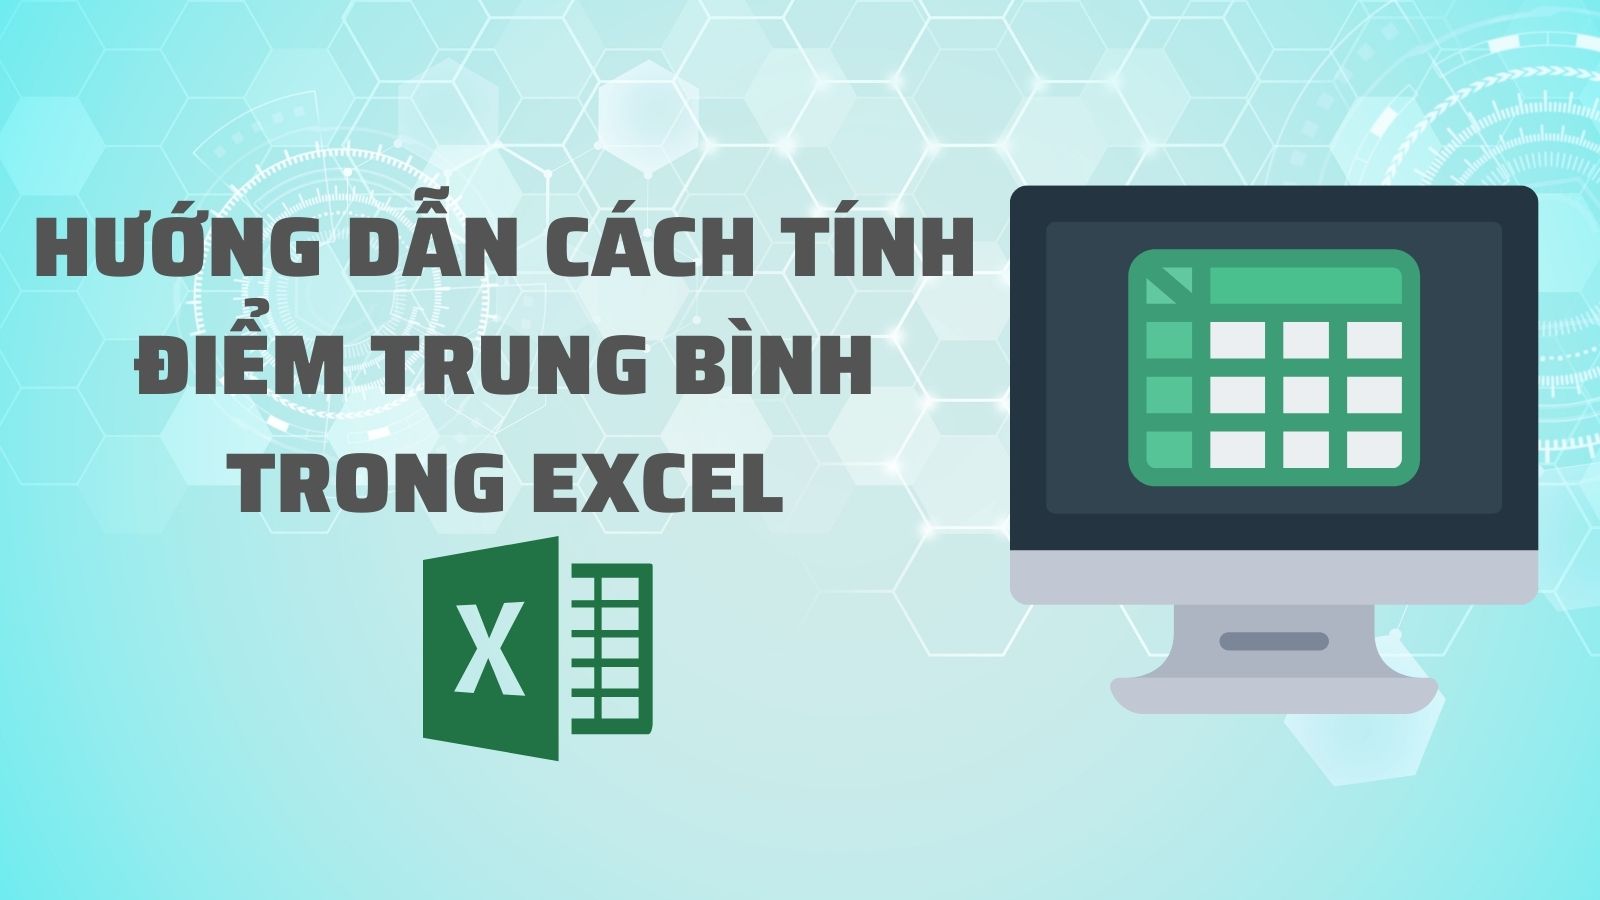 Tổng hợp các cách tính điểm trung bình trong Excel đơn giản và dễ thực hiện